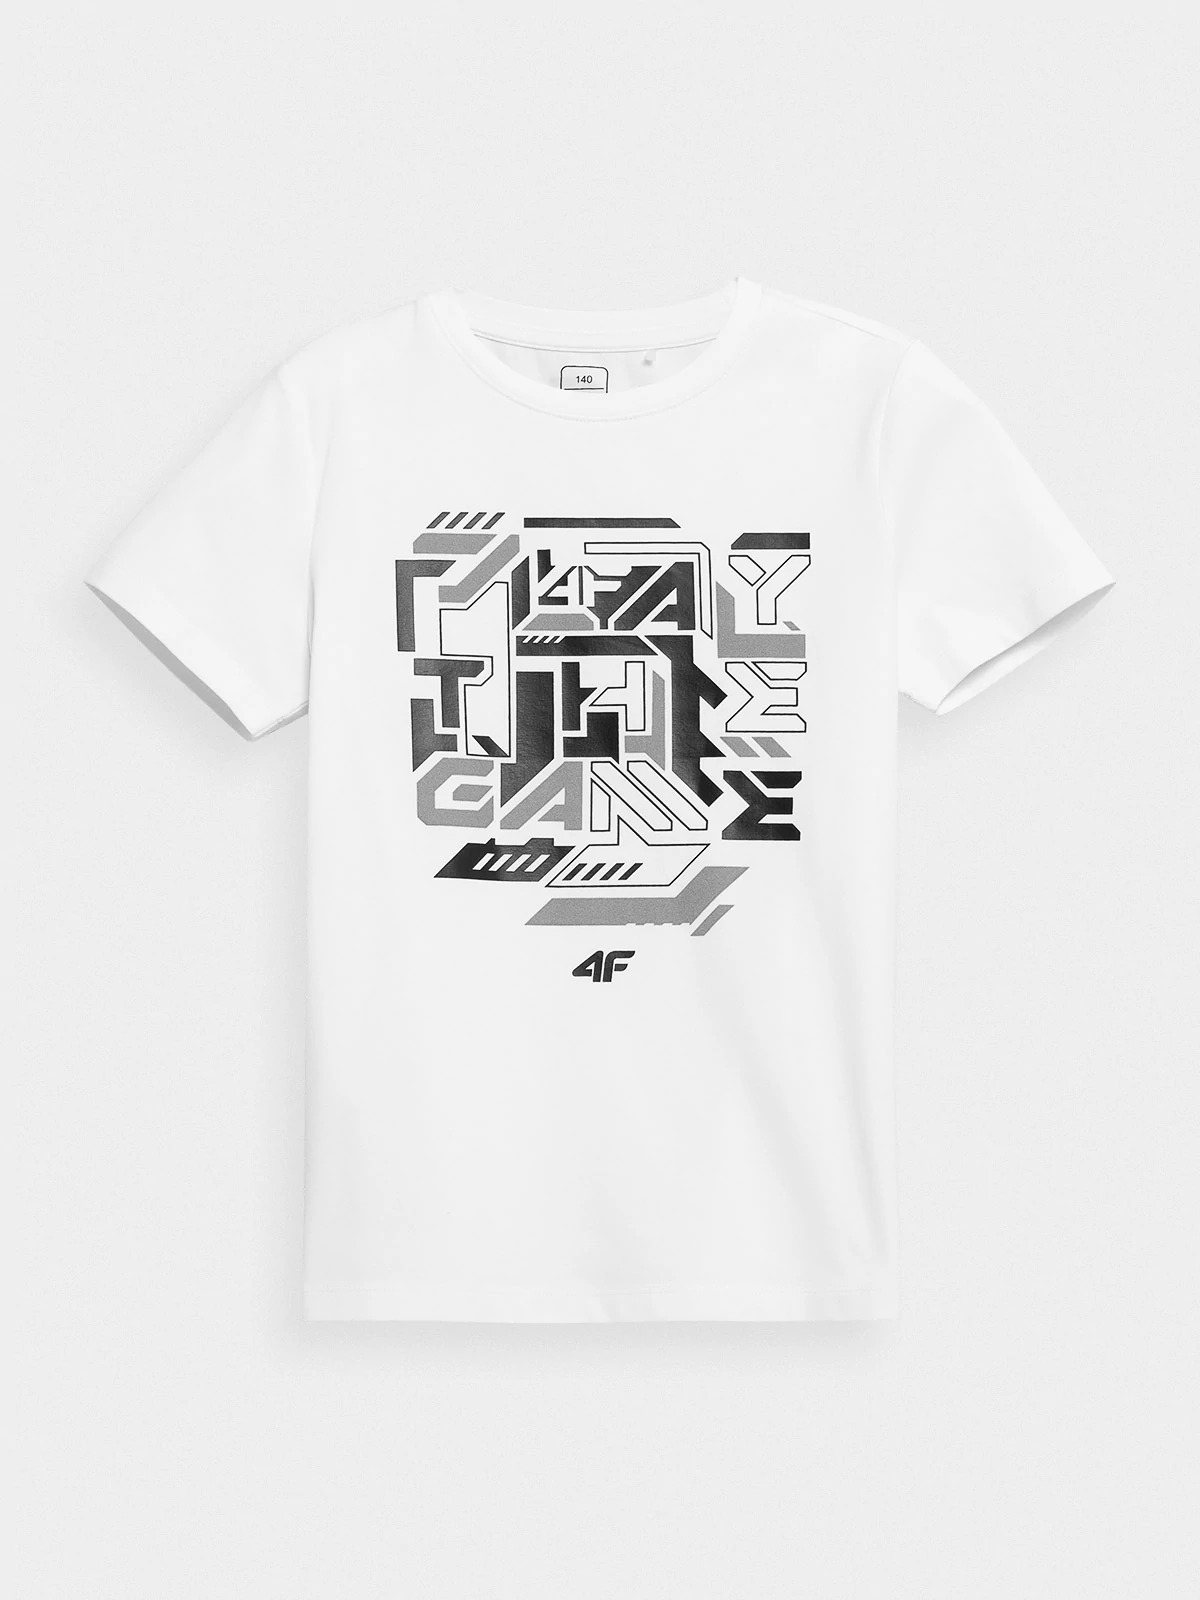 фото Футболка 4f boy's t-shirts hjz21-jtsm006b-10s цв.белый р. 158